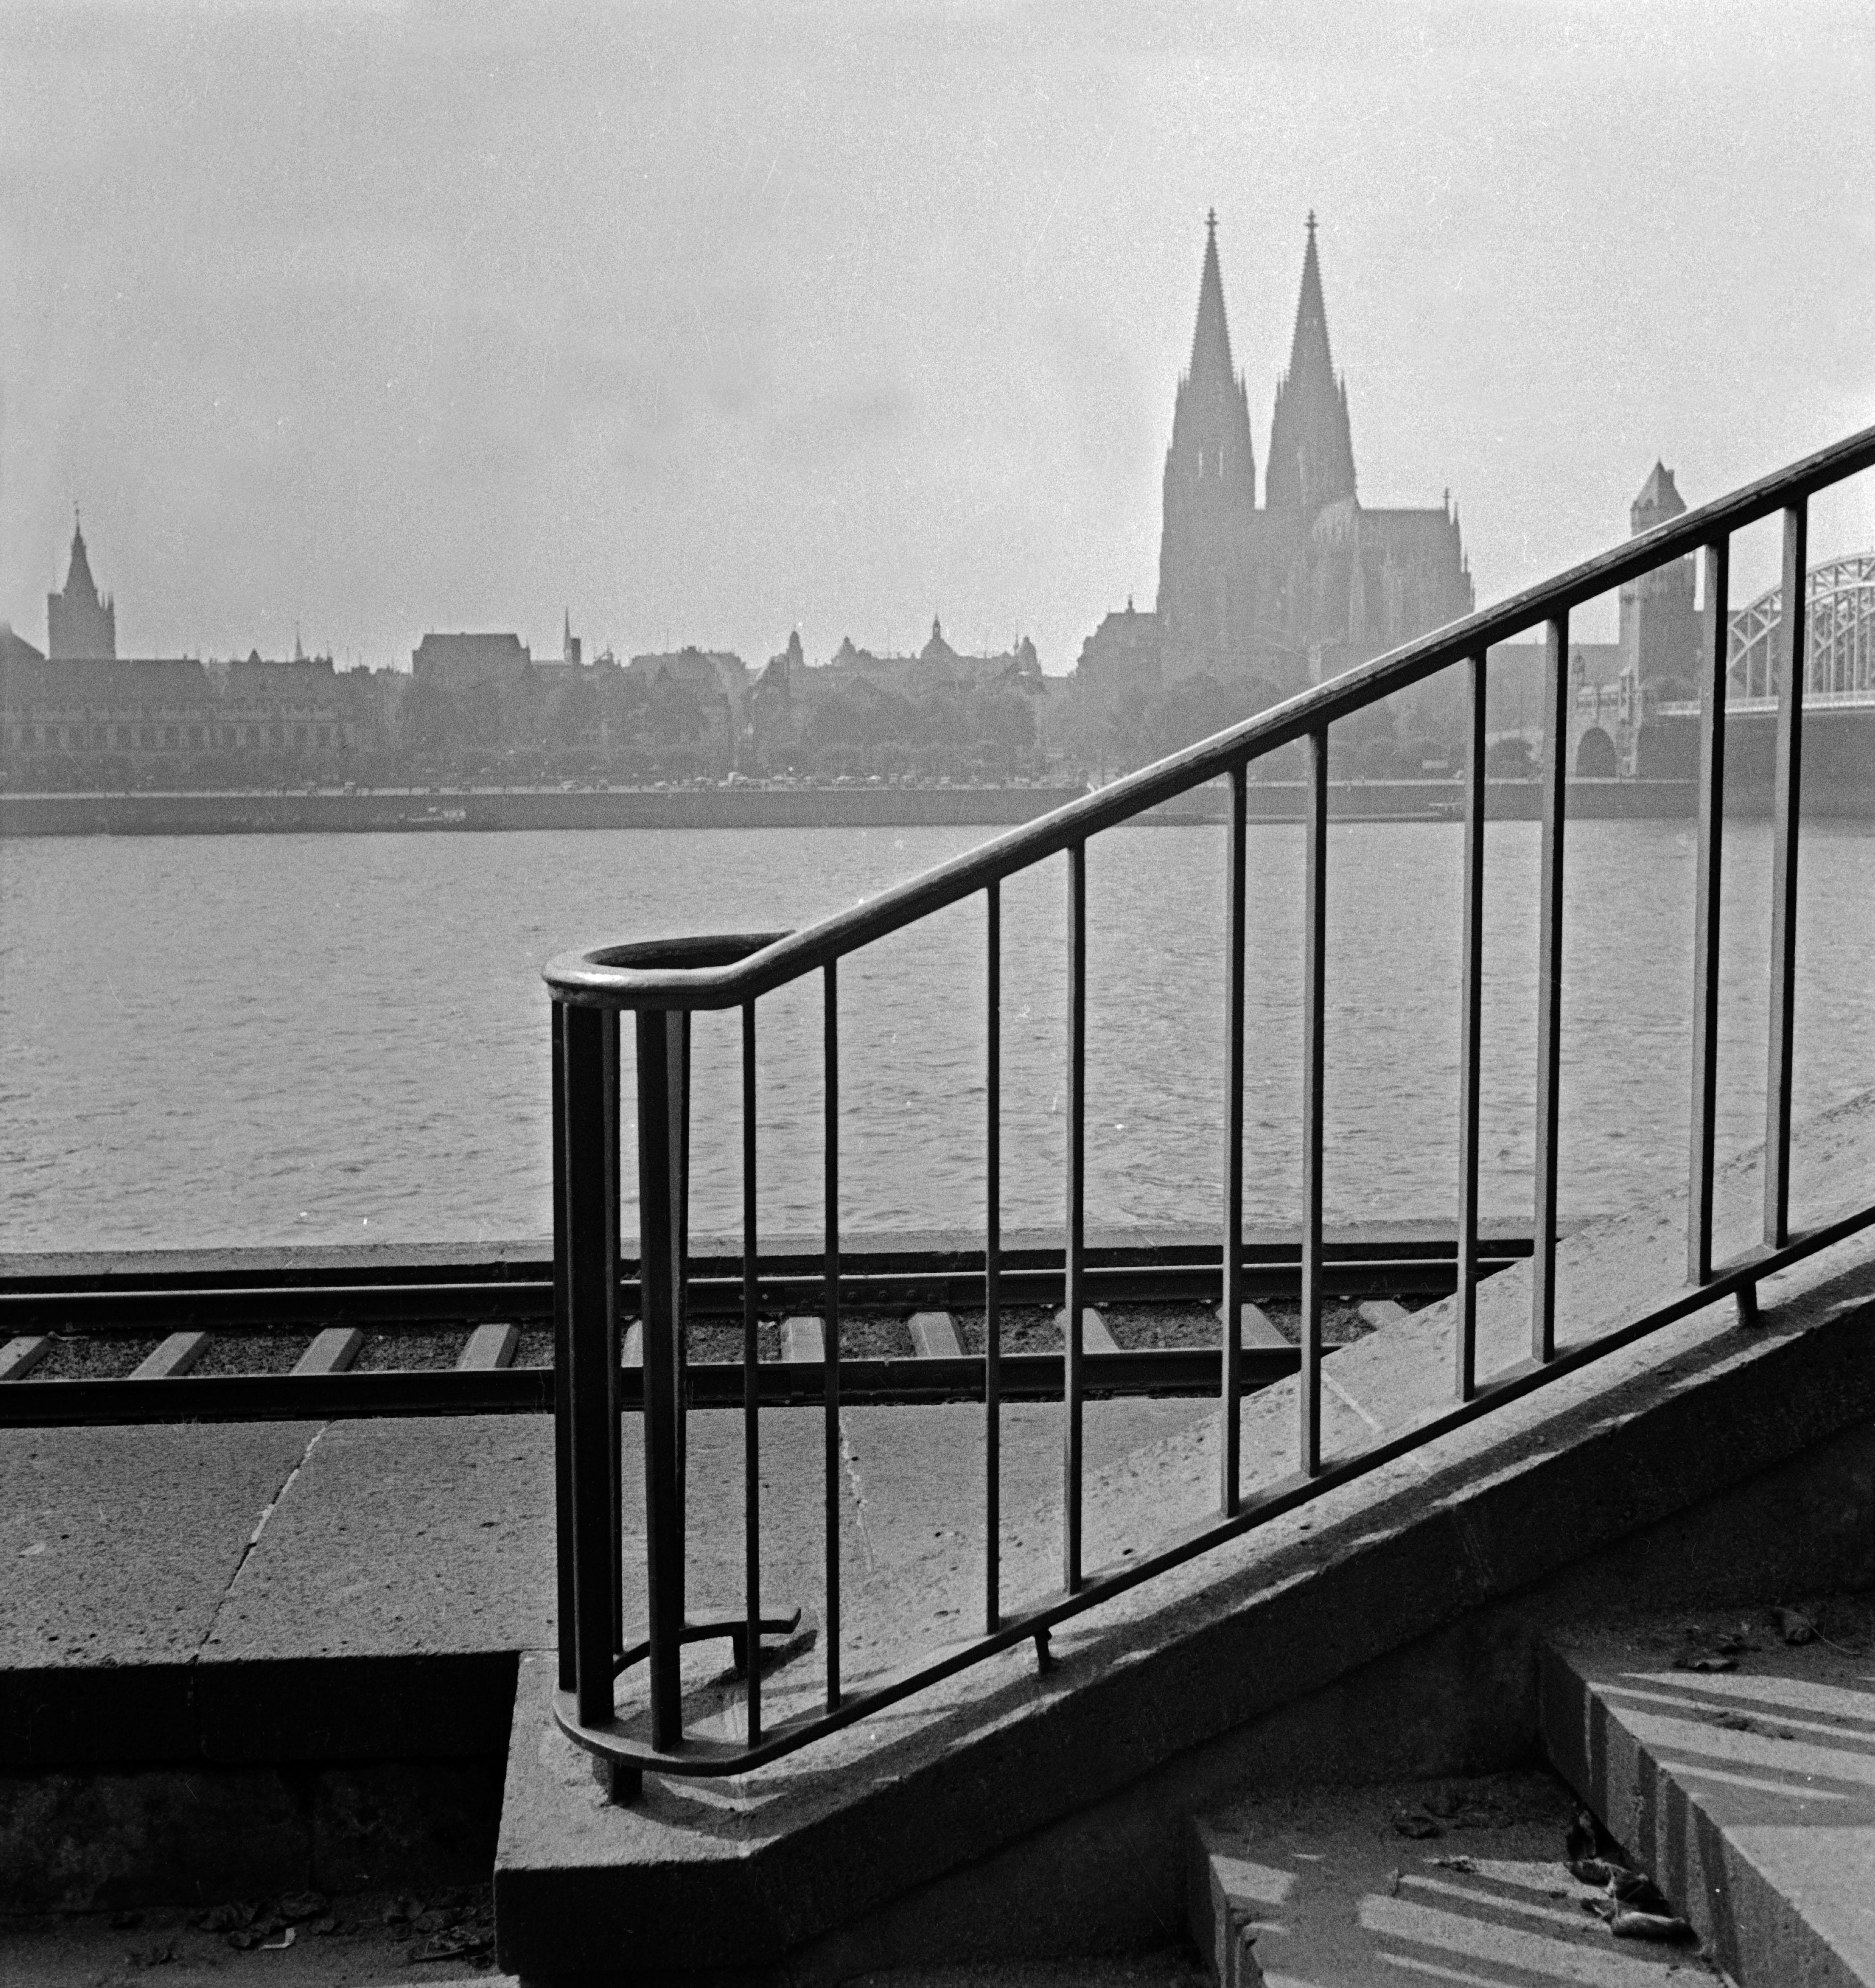 Black and White Photograph Karl Heinrich Lämmel - Cologne, Allemagne 1935, Imprimé ultérieurement